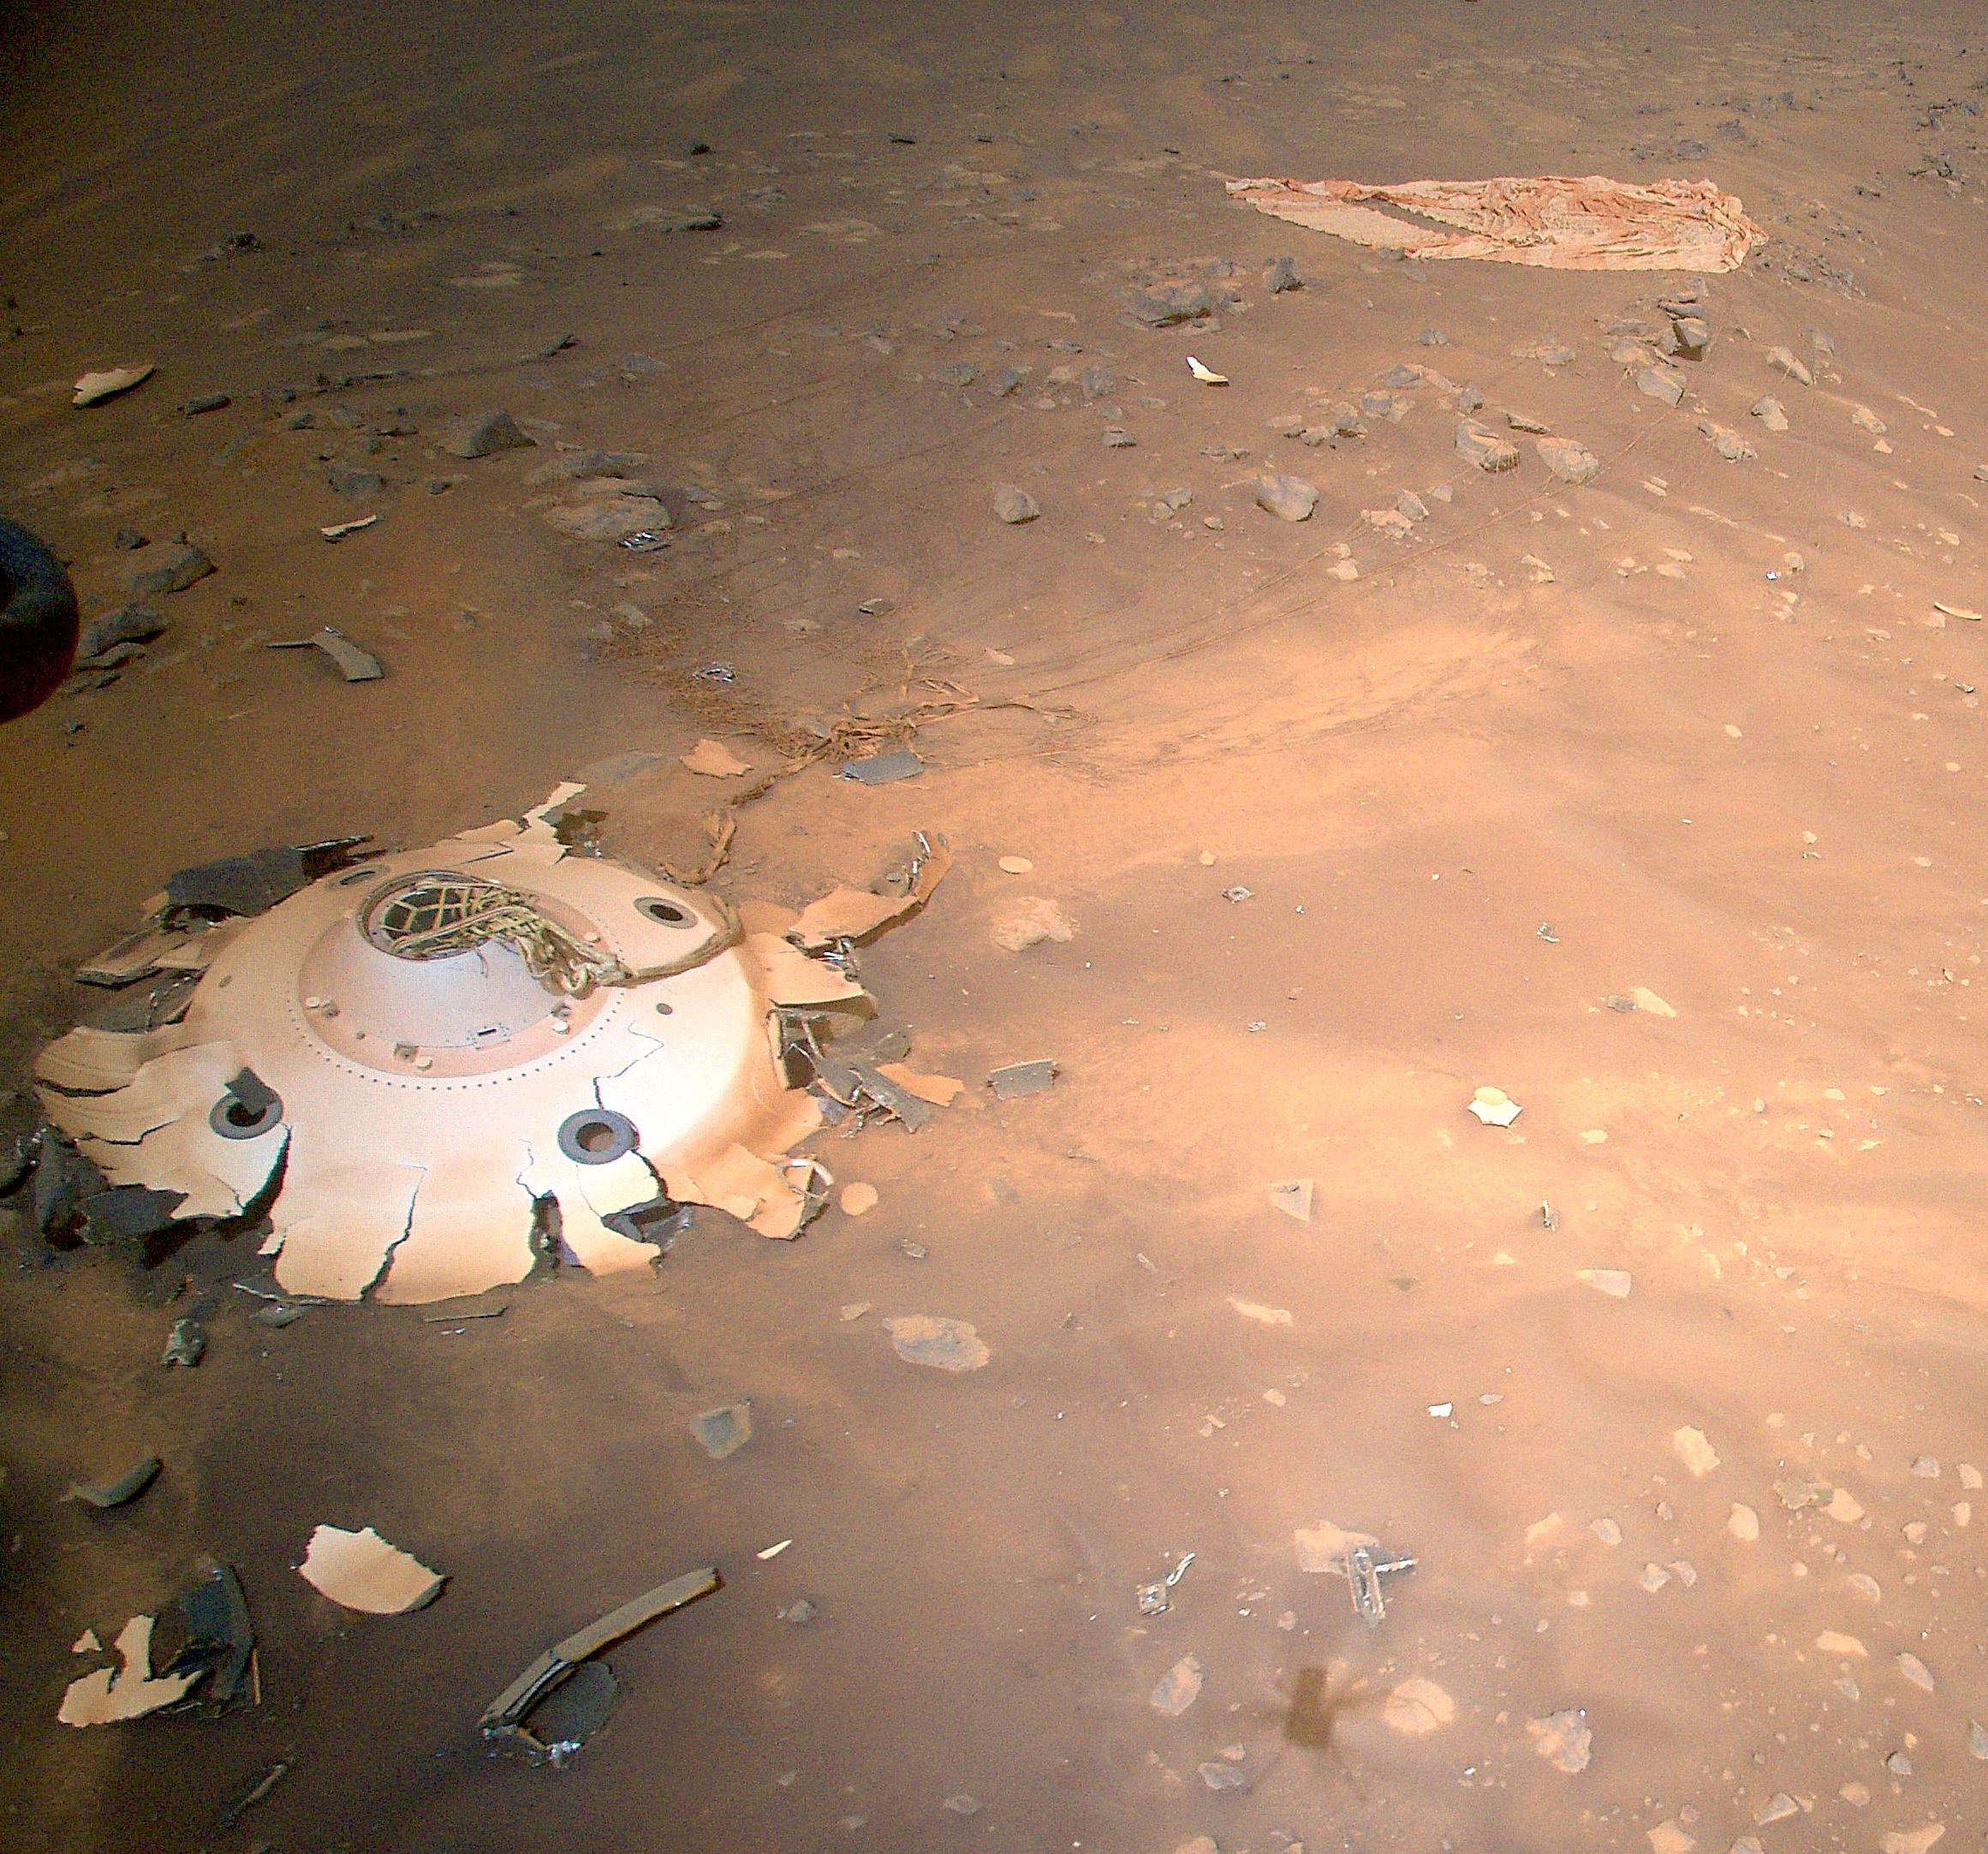 Lefotózta a Mars-helikopter a saját landolási rendszeréből megmaradt törmeléket